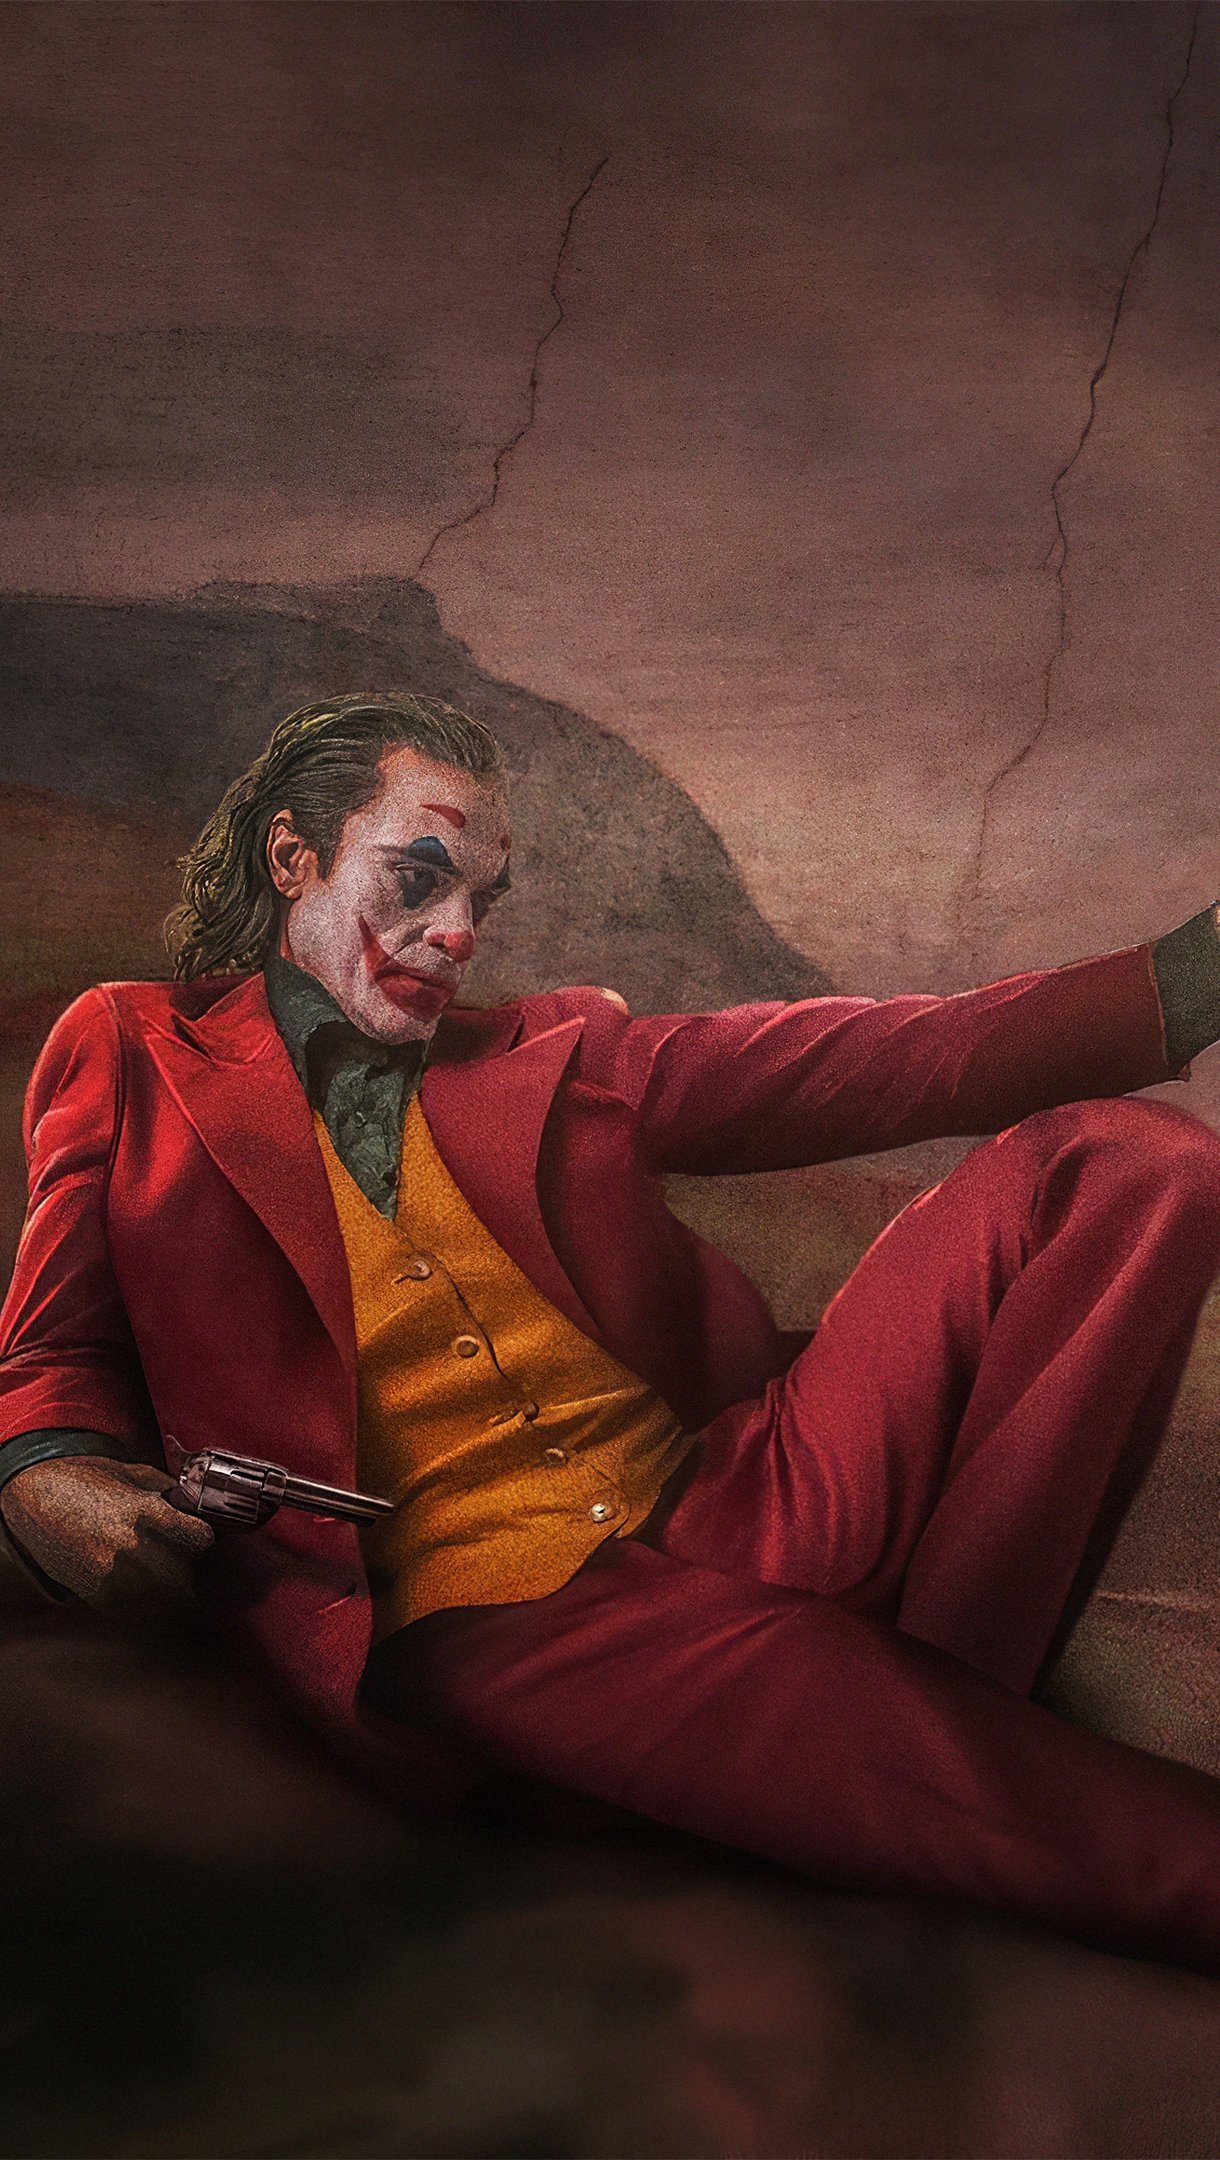 Fondos de pantalla Joker como Joaquin Phoenix y Heath Ledger en pintura de Miguel Angel Vertical